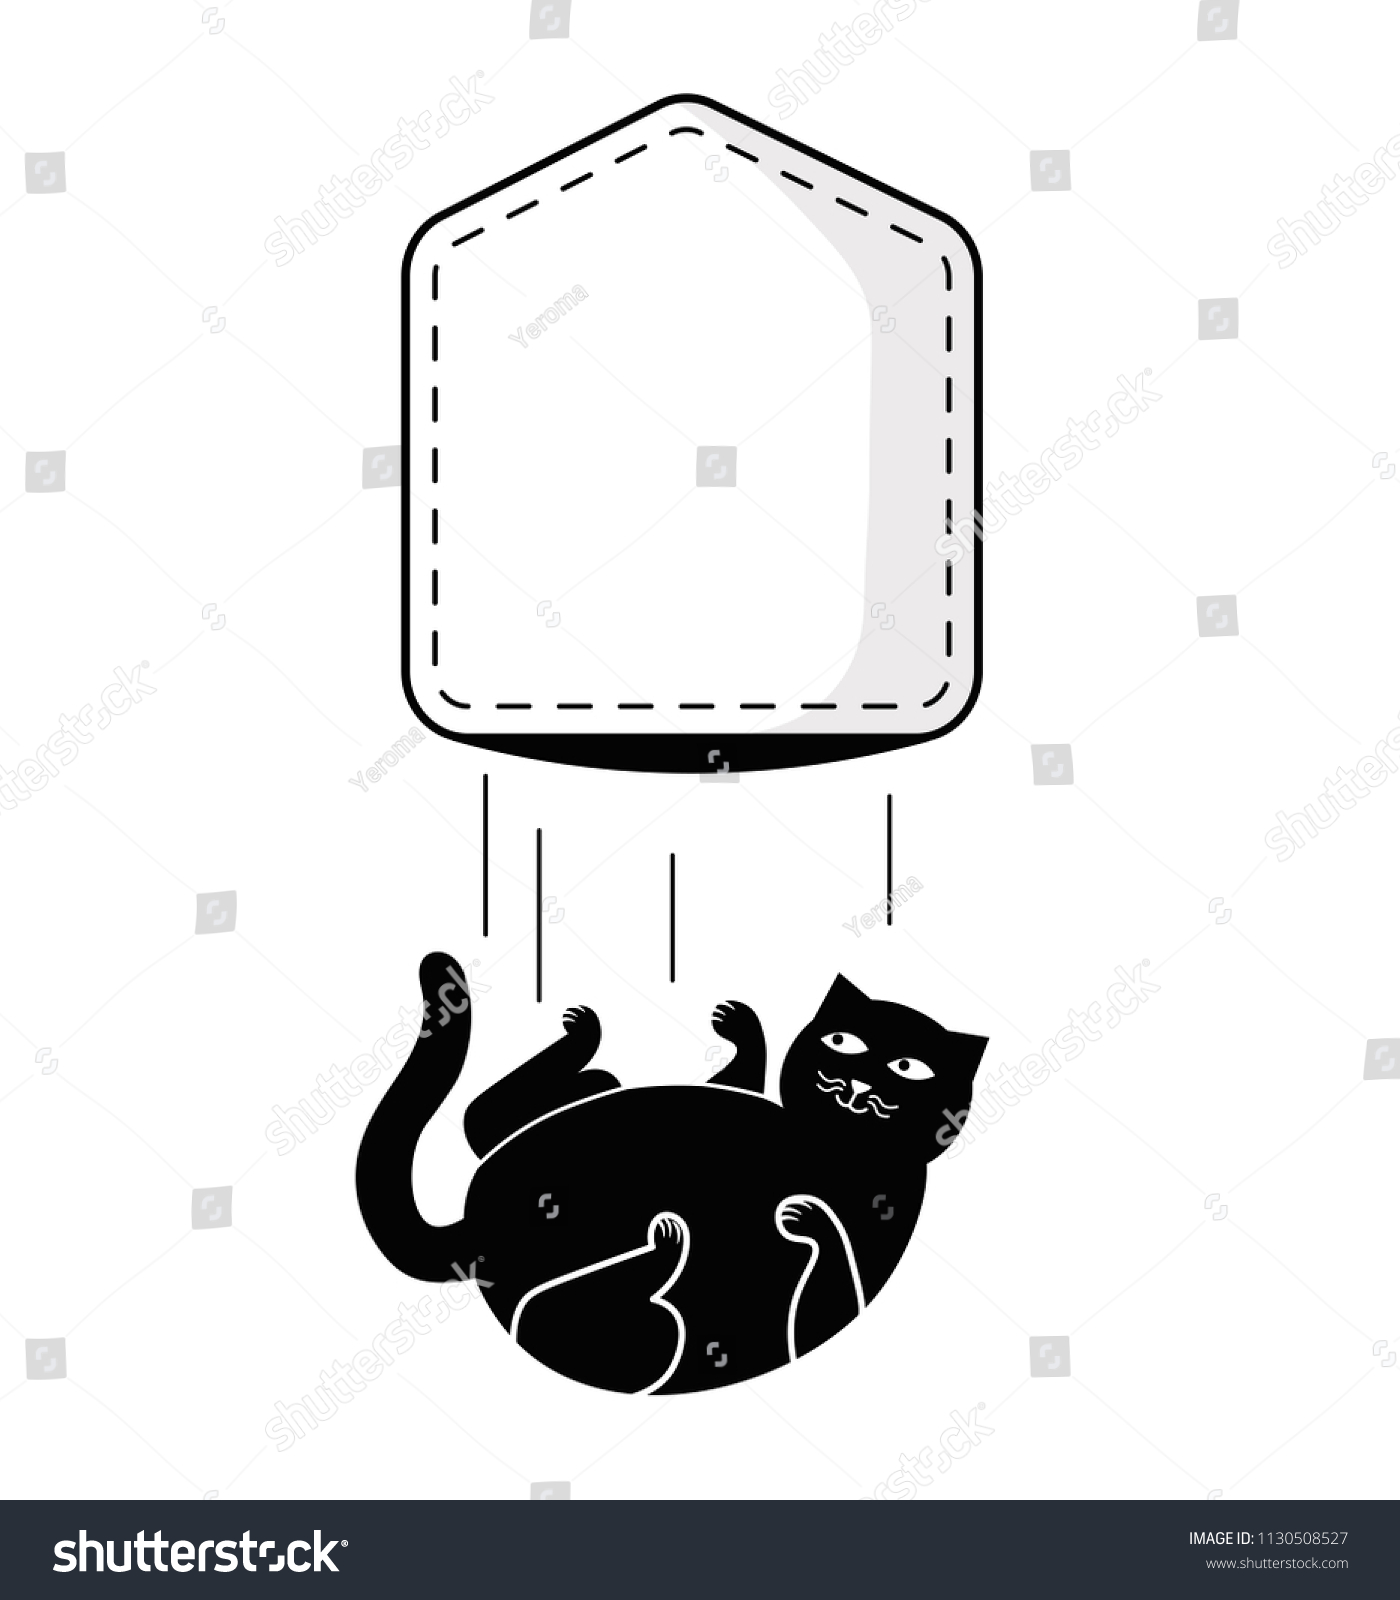 SVG of Pocket fat cat for t-shirt design. Falling cat out of pocket. Vector illustration. svg